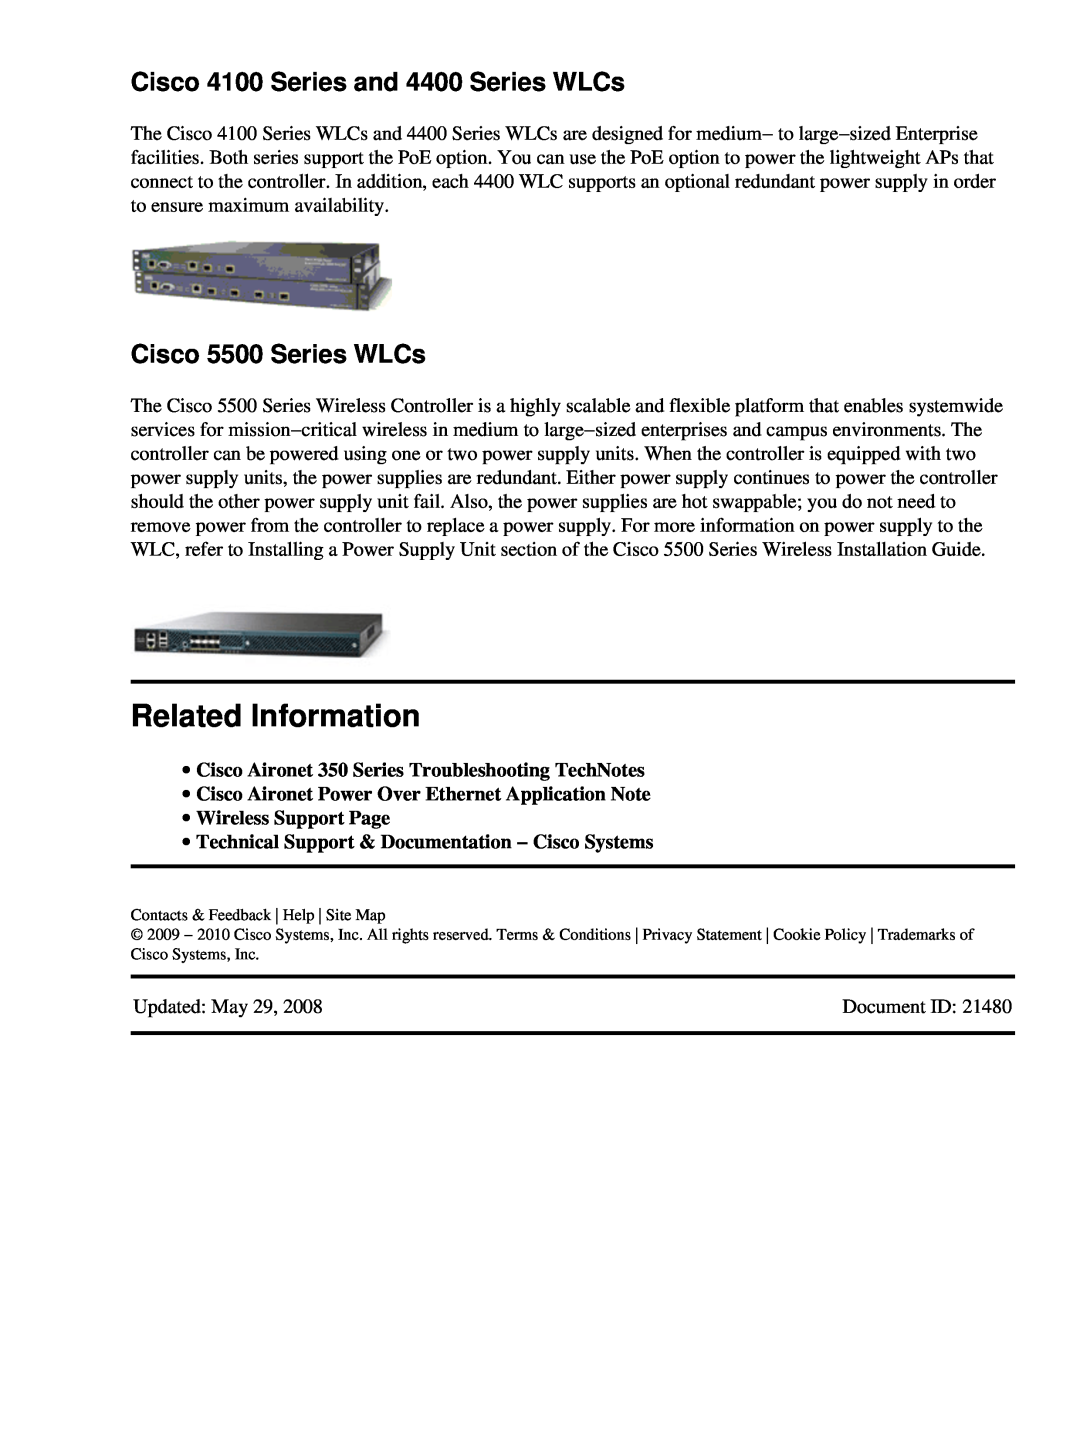 Cisco Systems UCSCRAIDMZ220, 2008M-8i Related Information, Cisco 4100 Series and 4400 Series WLCs, Cisco 5500 Series WLCs 